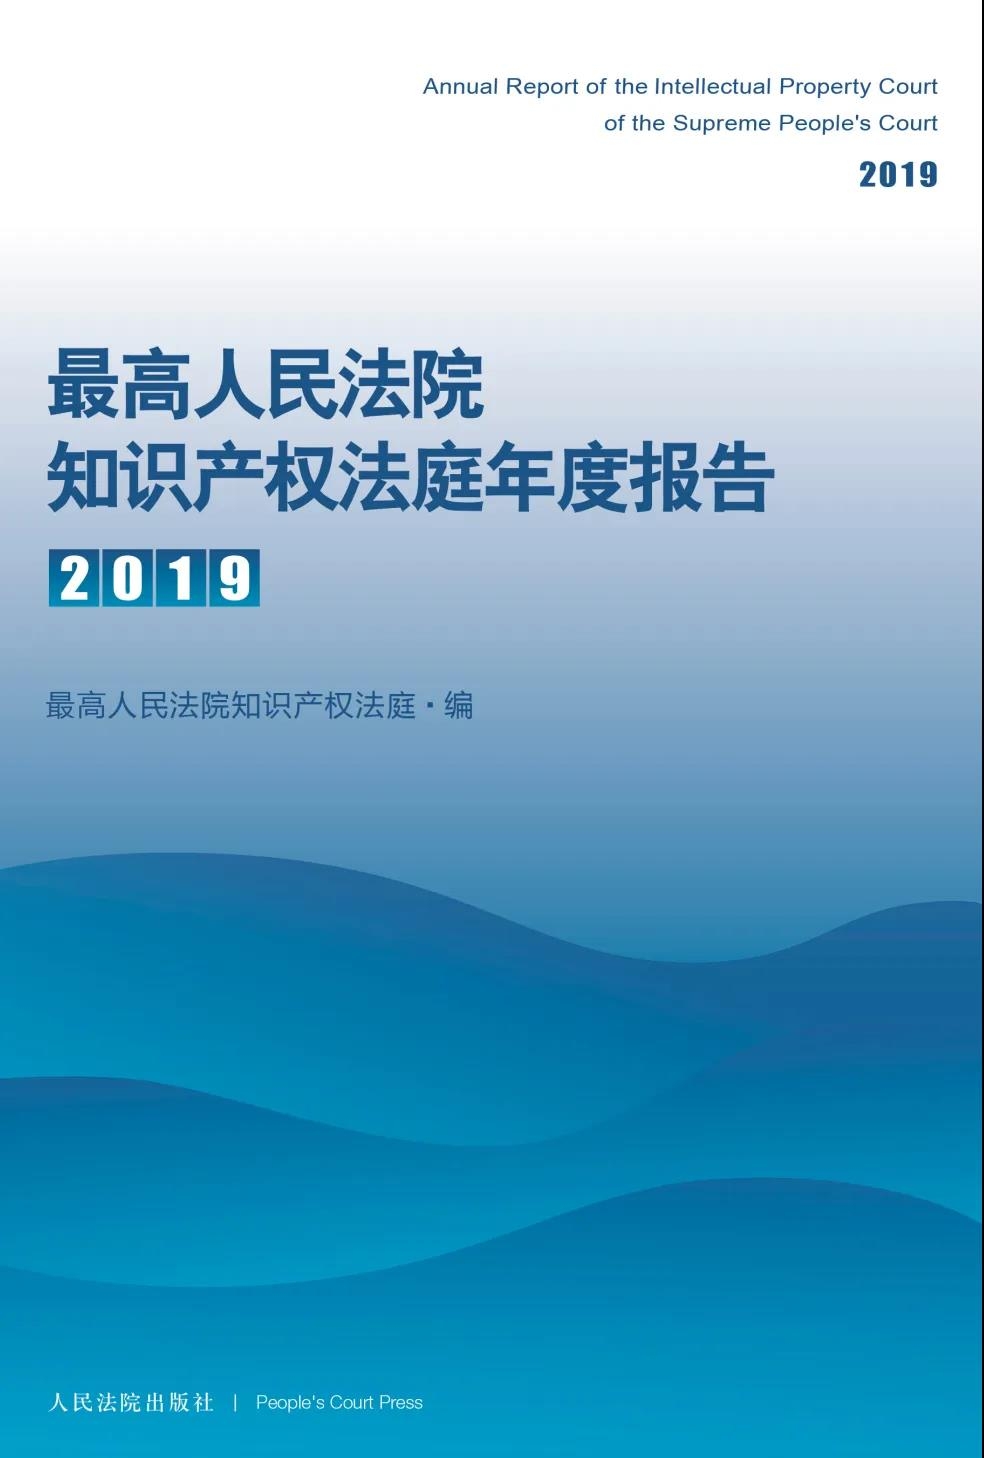 《最高人民法院知识产权法庭年度报告（2019）》发布